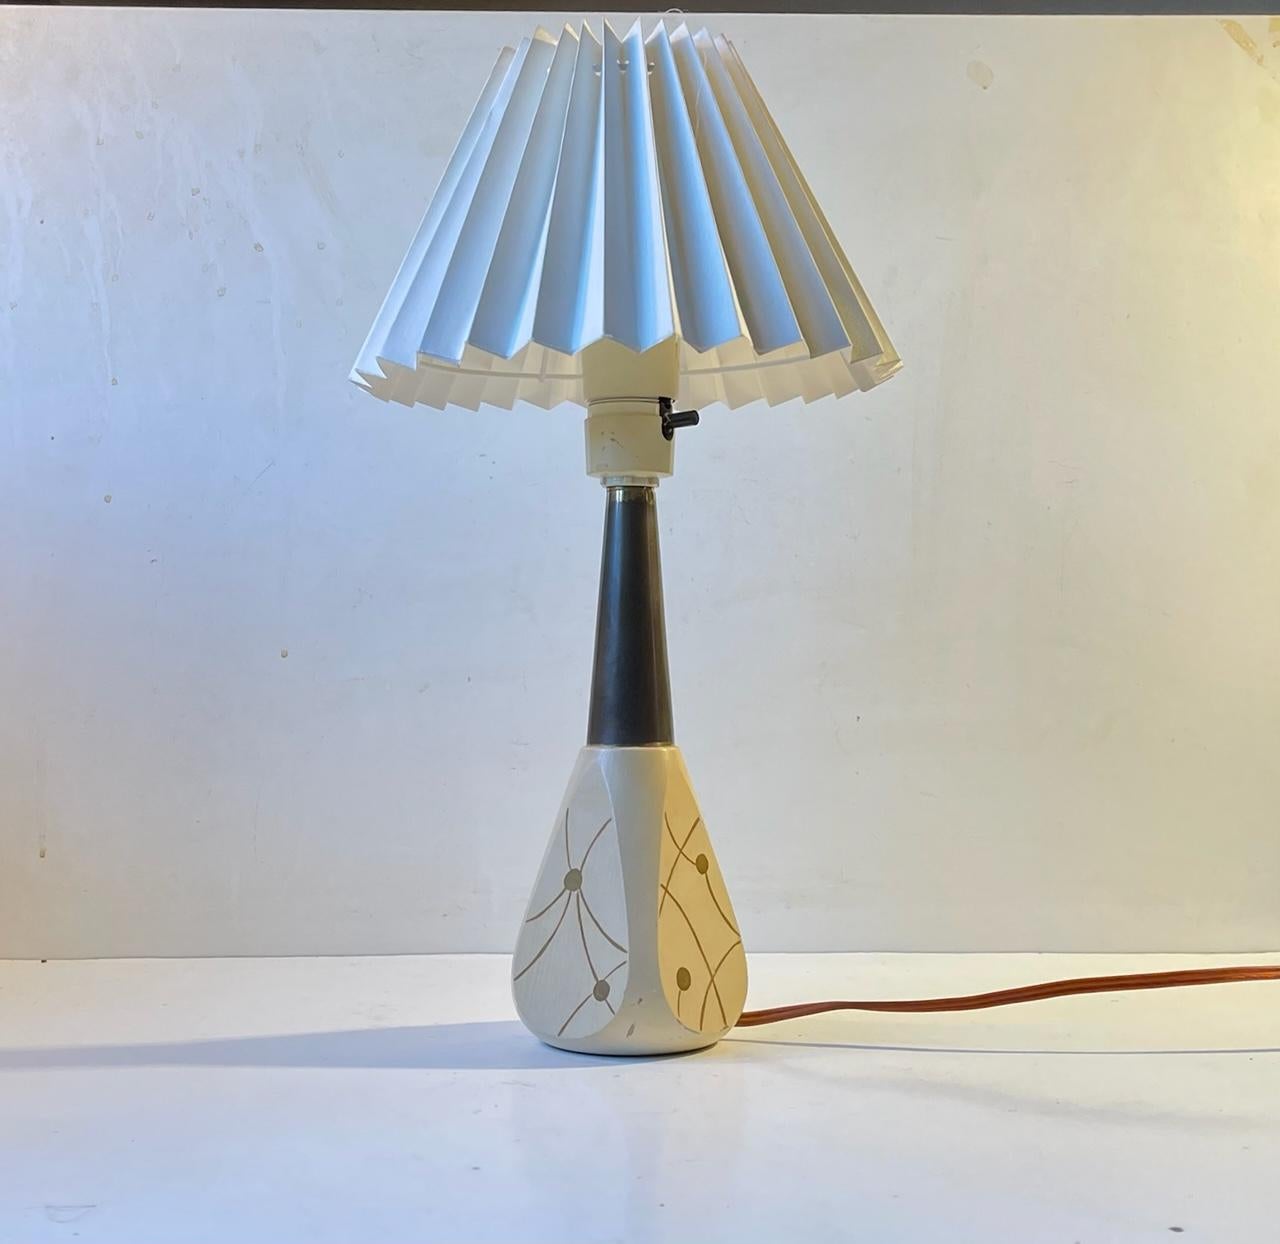 Lampe de table italienne des années 1950 composée d'un socle en bois laqué à décor atomique imprimé à la main, d'un plateau en laiton et d'un abat-jour en acrylique cannelé blanc. Il a été fabriqué en Italie dans les années 1950 dans un style qui